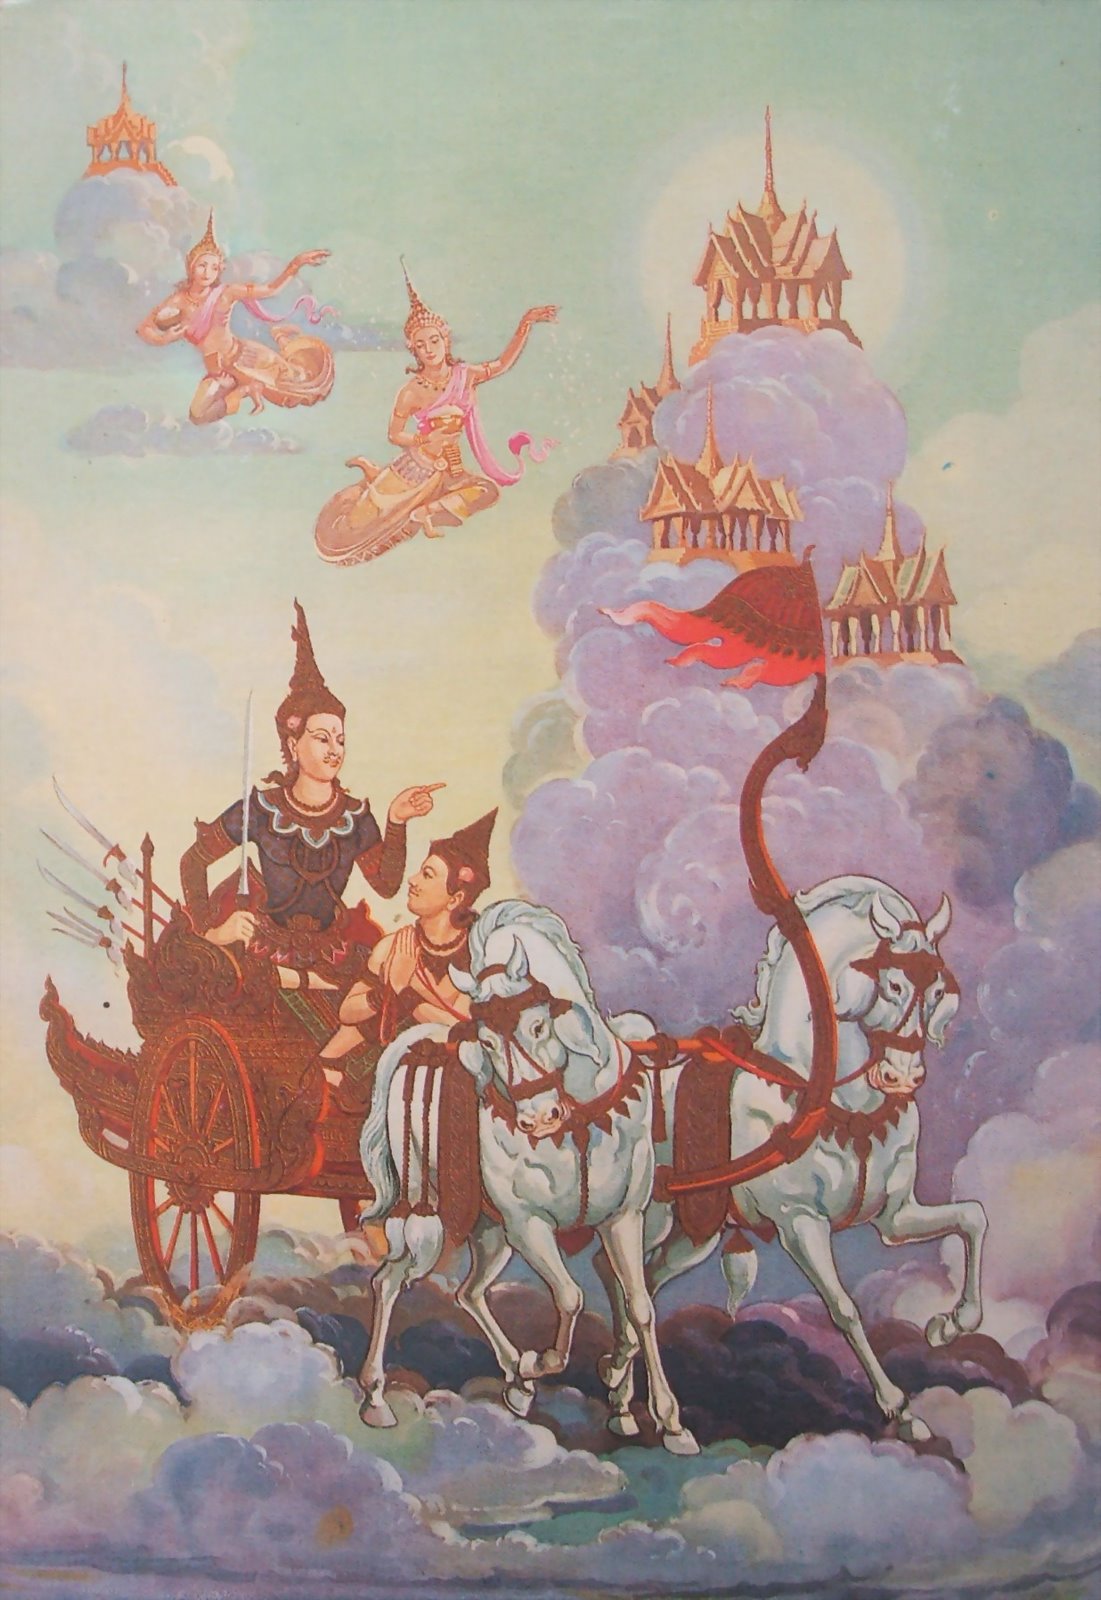 Trong một tiền kiếp khi Ðức Phật là Ngài Nemi, Ngài thực hành hạnh Chí Nguyện Balamật. Thần Ðế Thích Sakkha sai Matali đánh xe đến đưa Ngài đi viếng các cảnh địa ngục và thiên đàng, và các nơi trú ngụ của nam thiên và nữ thiên.